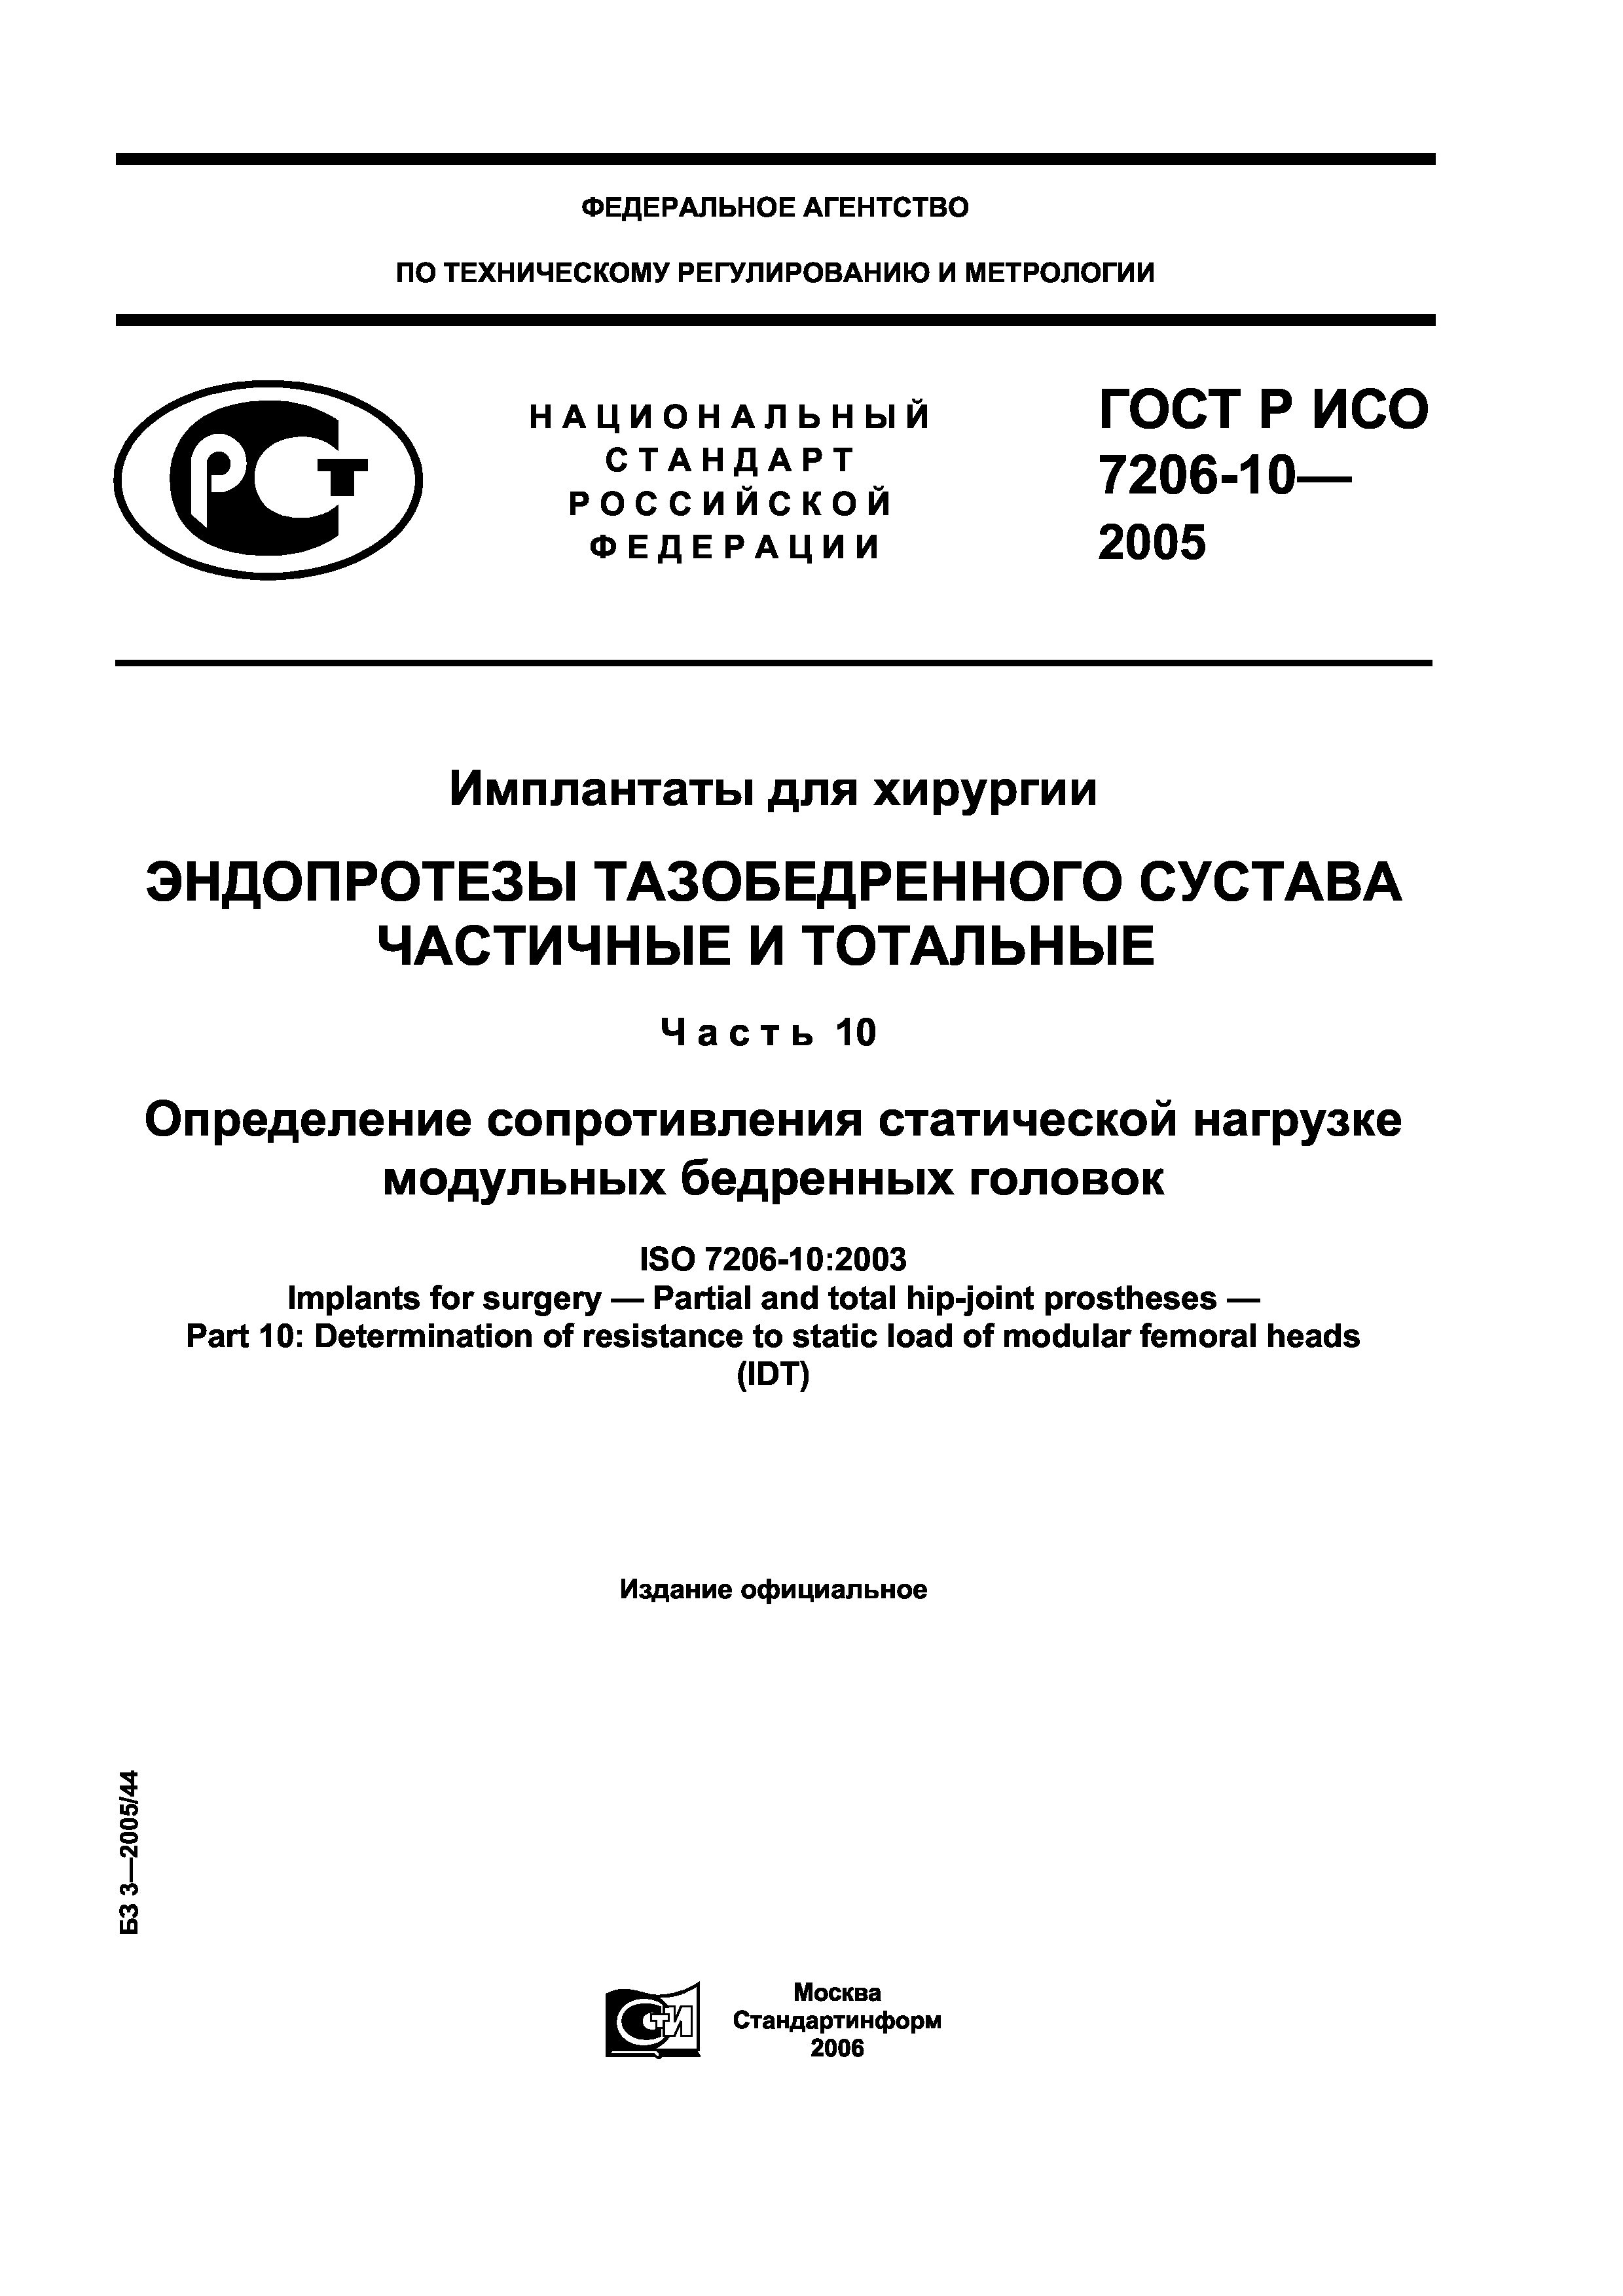 ГОСТ Р ИСО 7206-10-2005